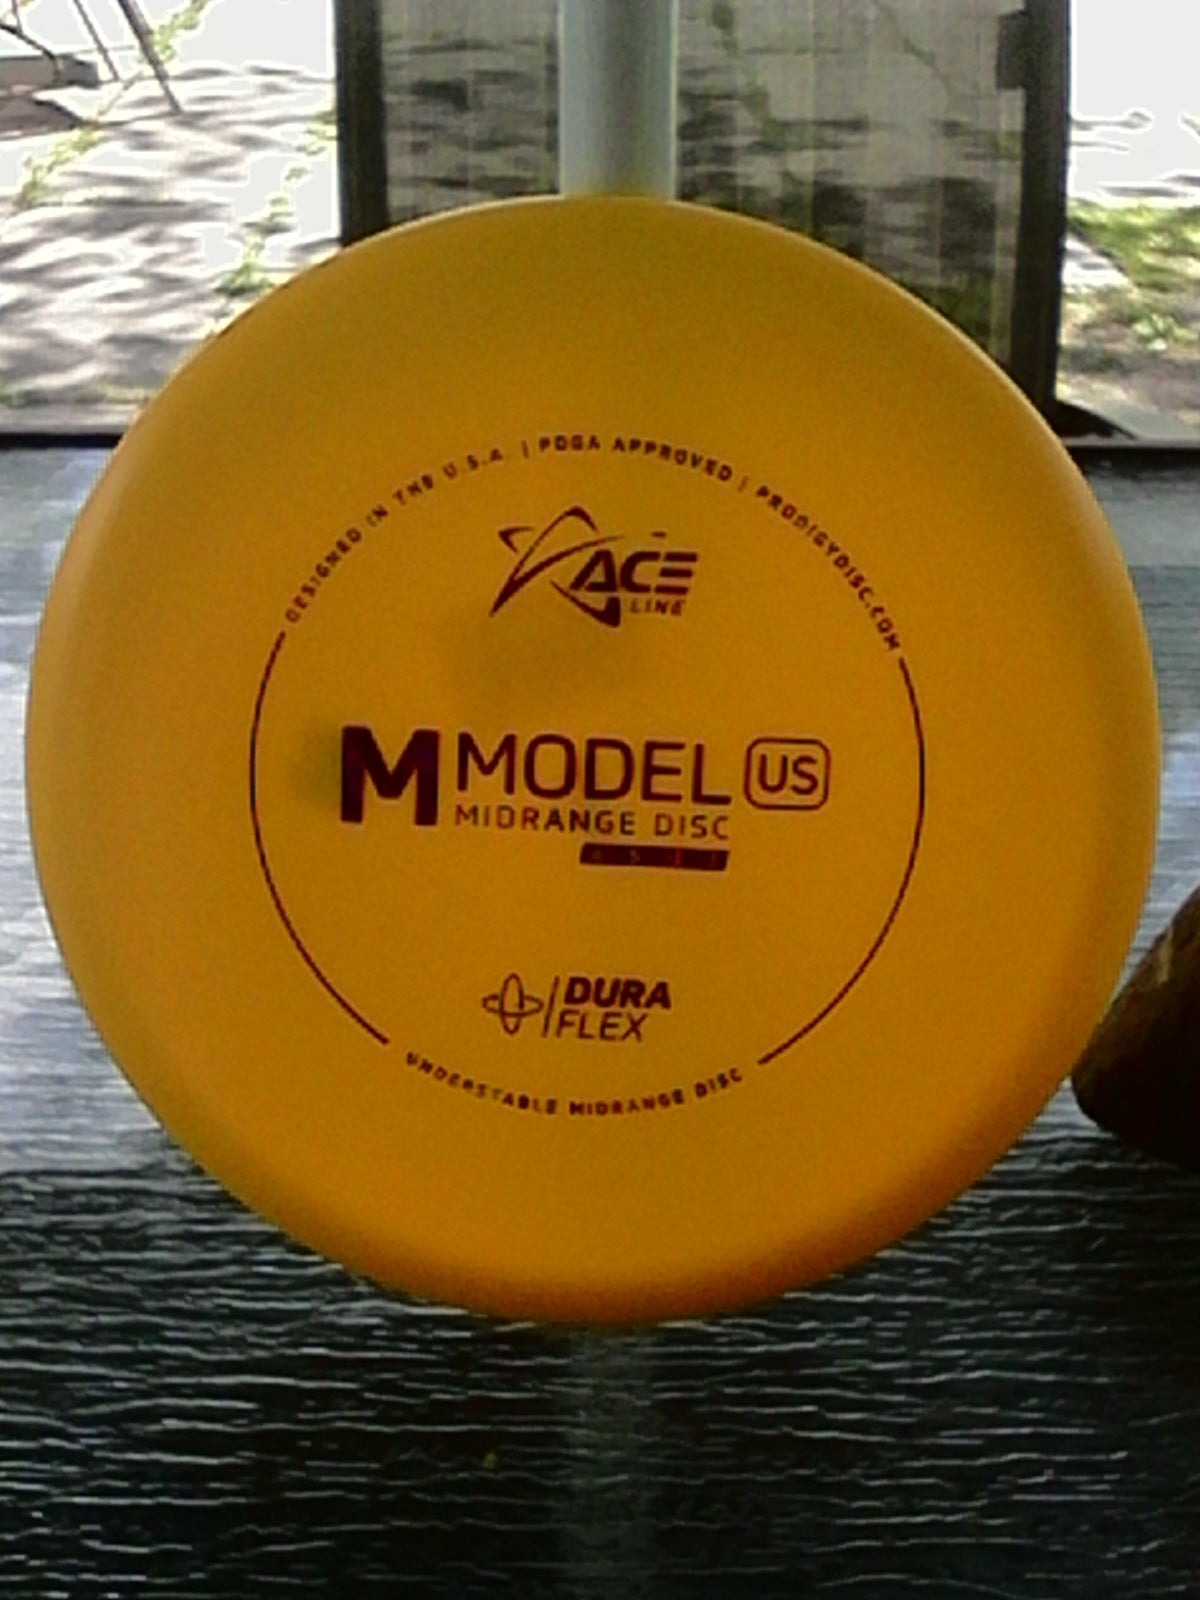 Prodigy Ace Line Dura Flex M Model US 180 Grams (MUS5A,B,C,D)